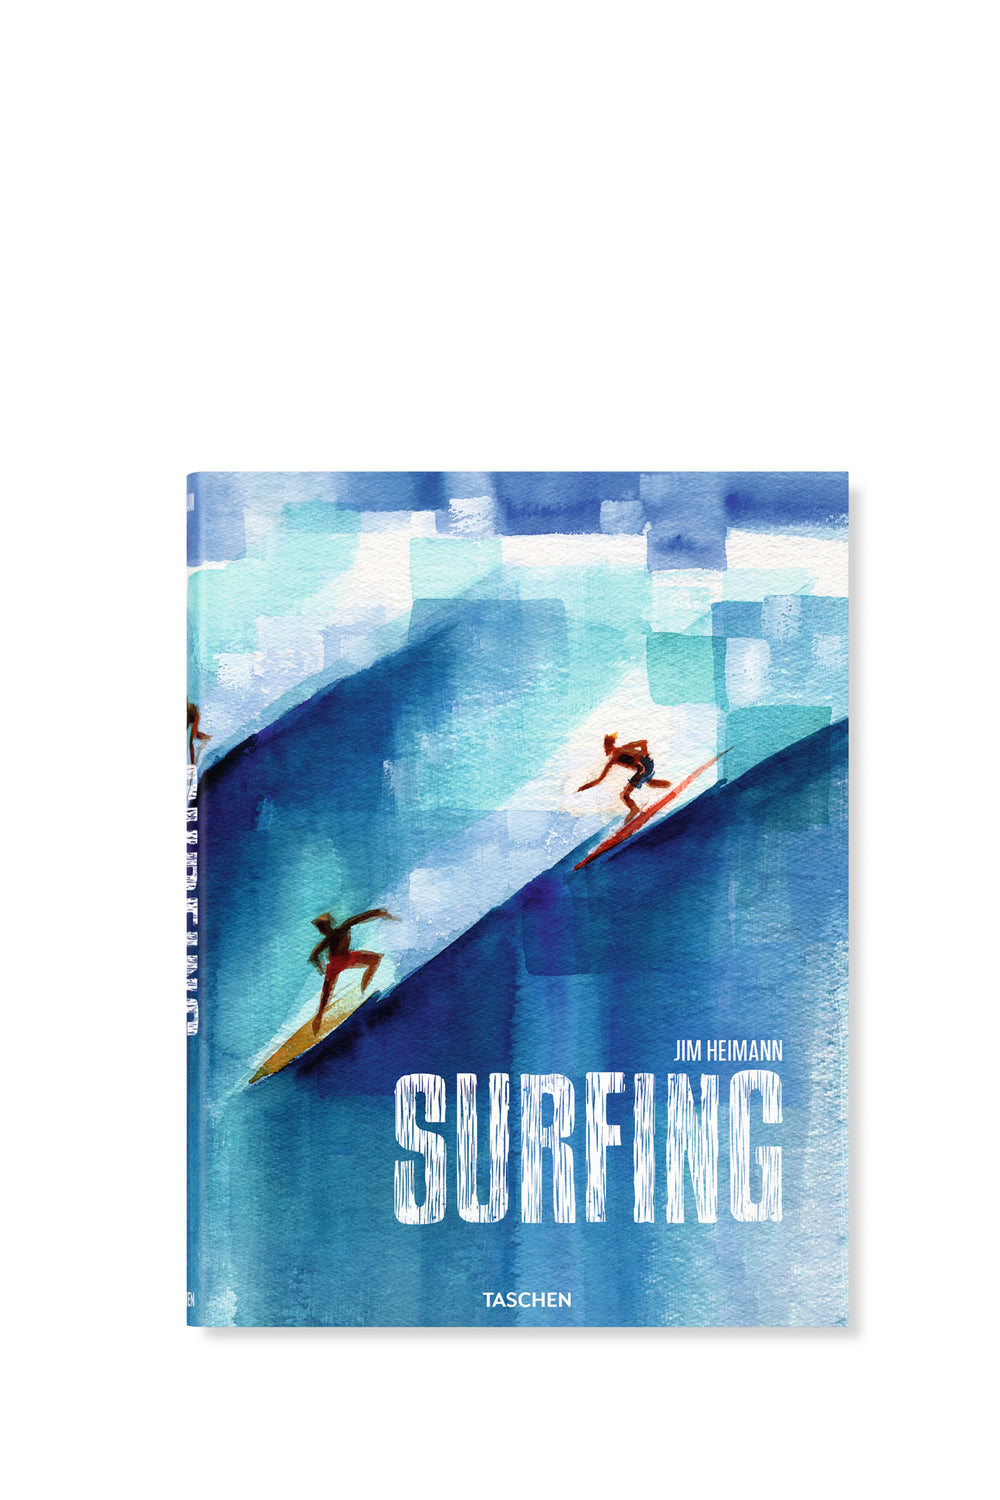 PUKAS-SURF-SHOP-BOOK-TASCHEN-SURFING-1778-TODAY-40TH-ED